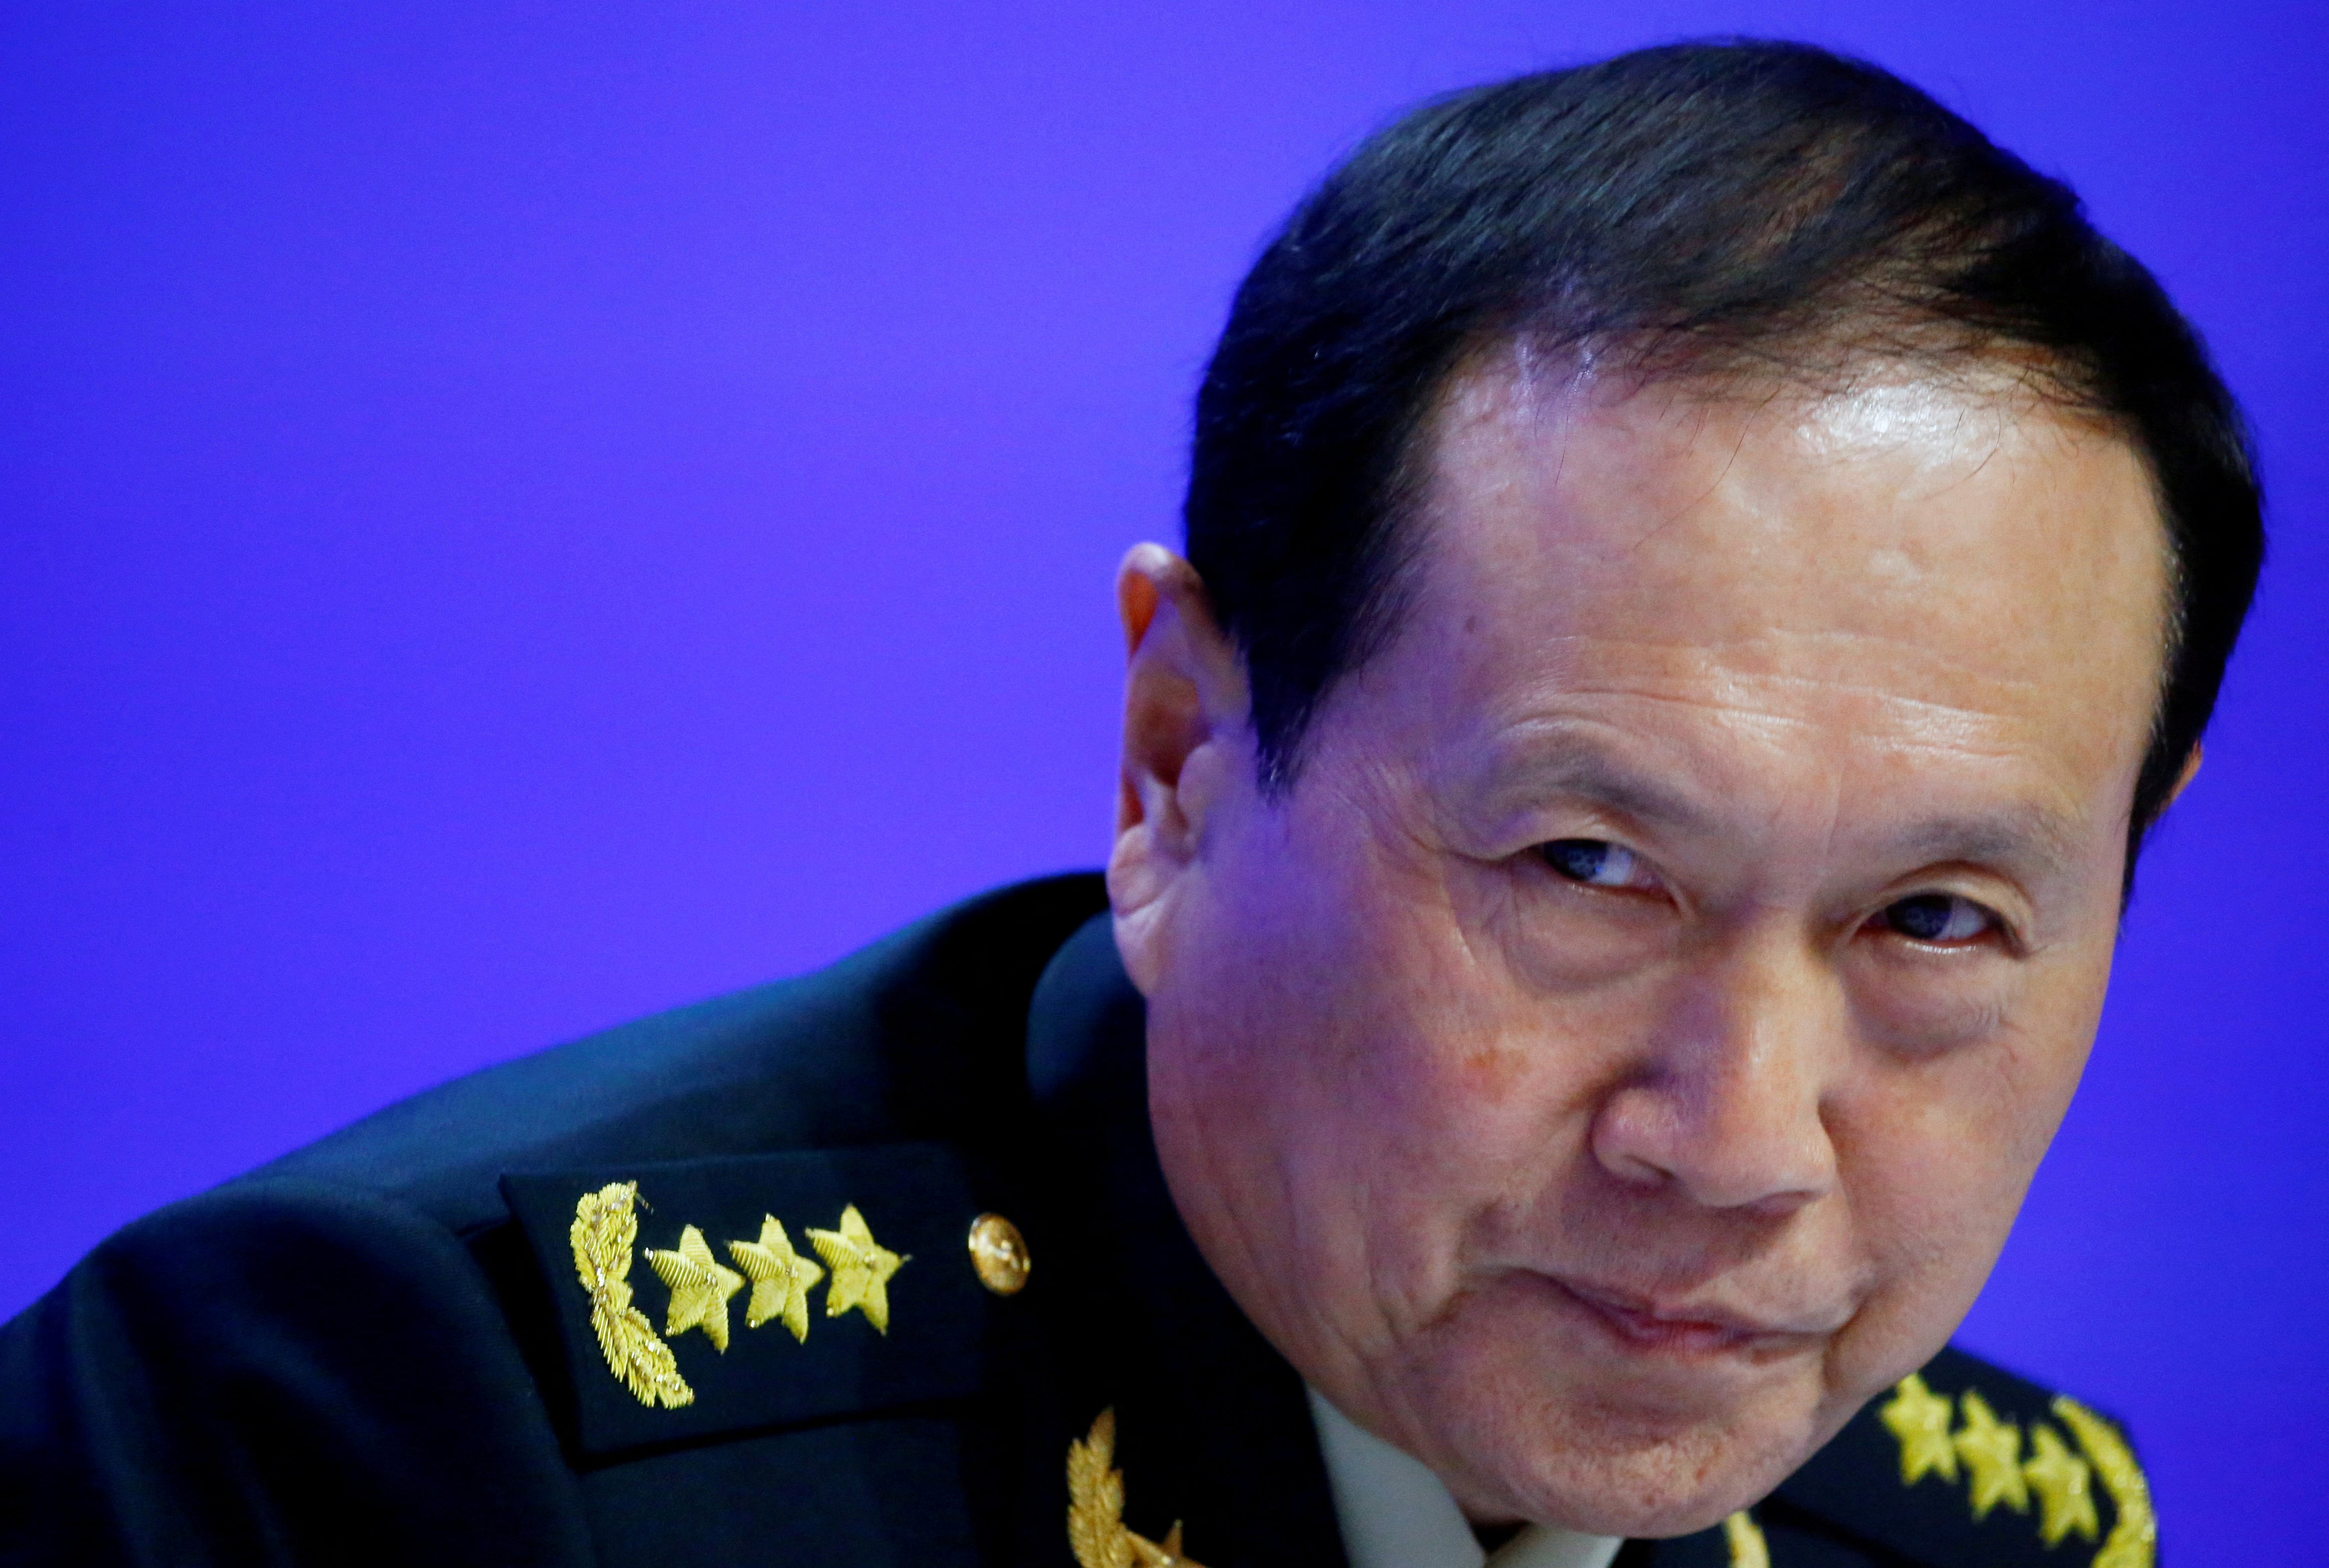 El ex ministro de Defensa chino, Wei Fenghe, fue destituido tras ser acusado de corrupción (REUTERS/Feline Lim)